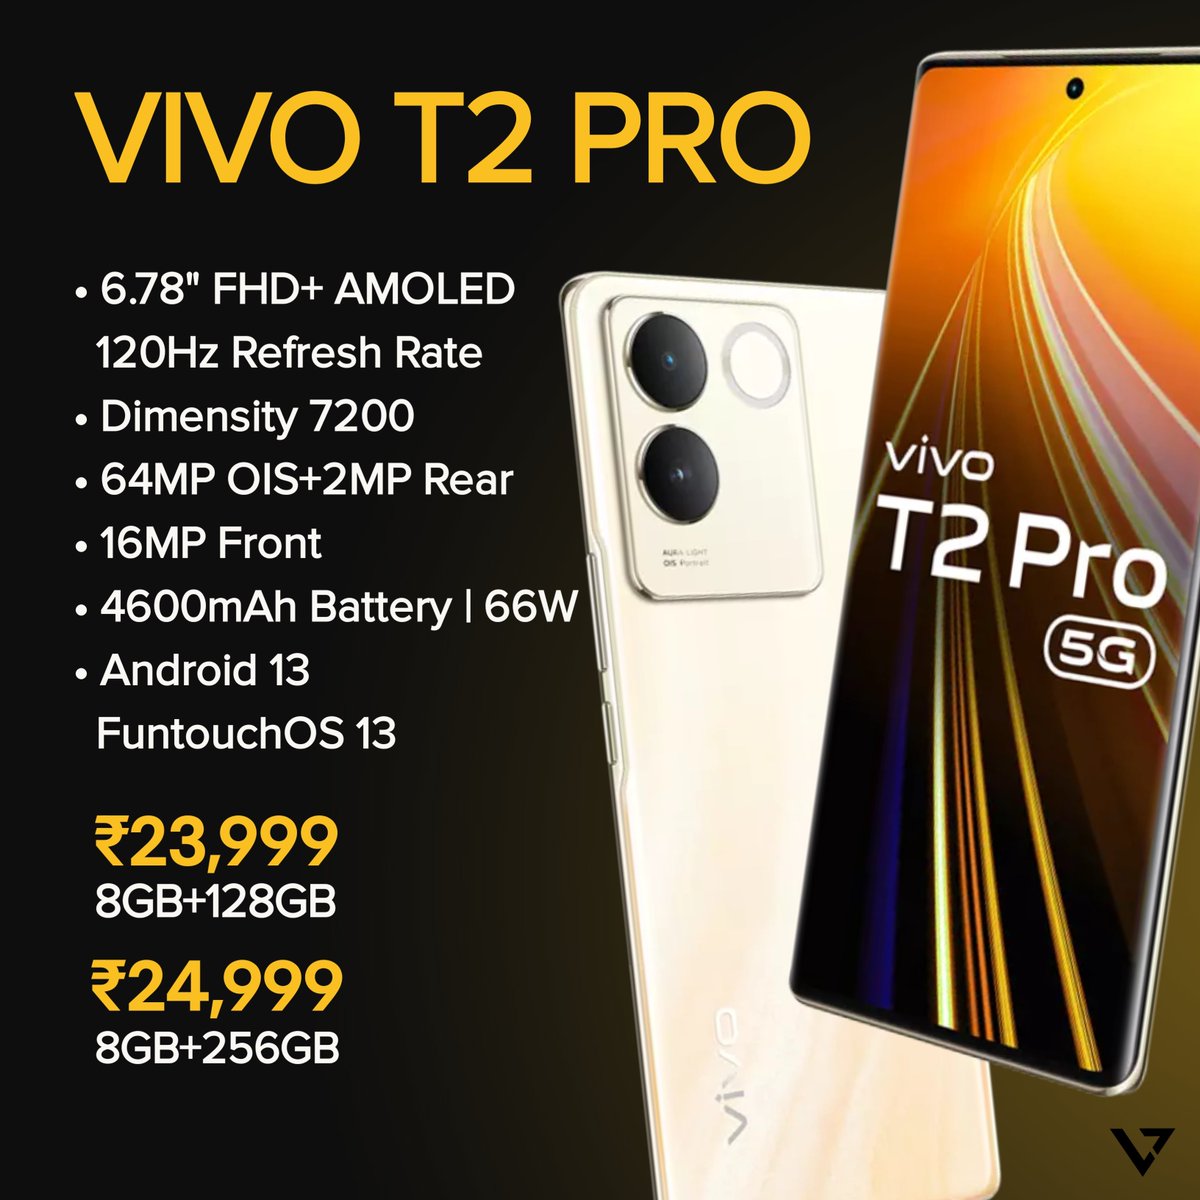 Vivo new Curved display phone Vivo T2 Pro at ₹23,999!
.
.
#techyvillage #vivo #vivot2pro #vivot2 #vivot2series